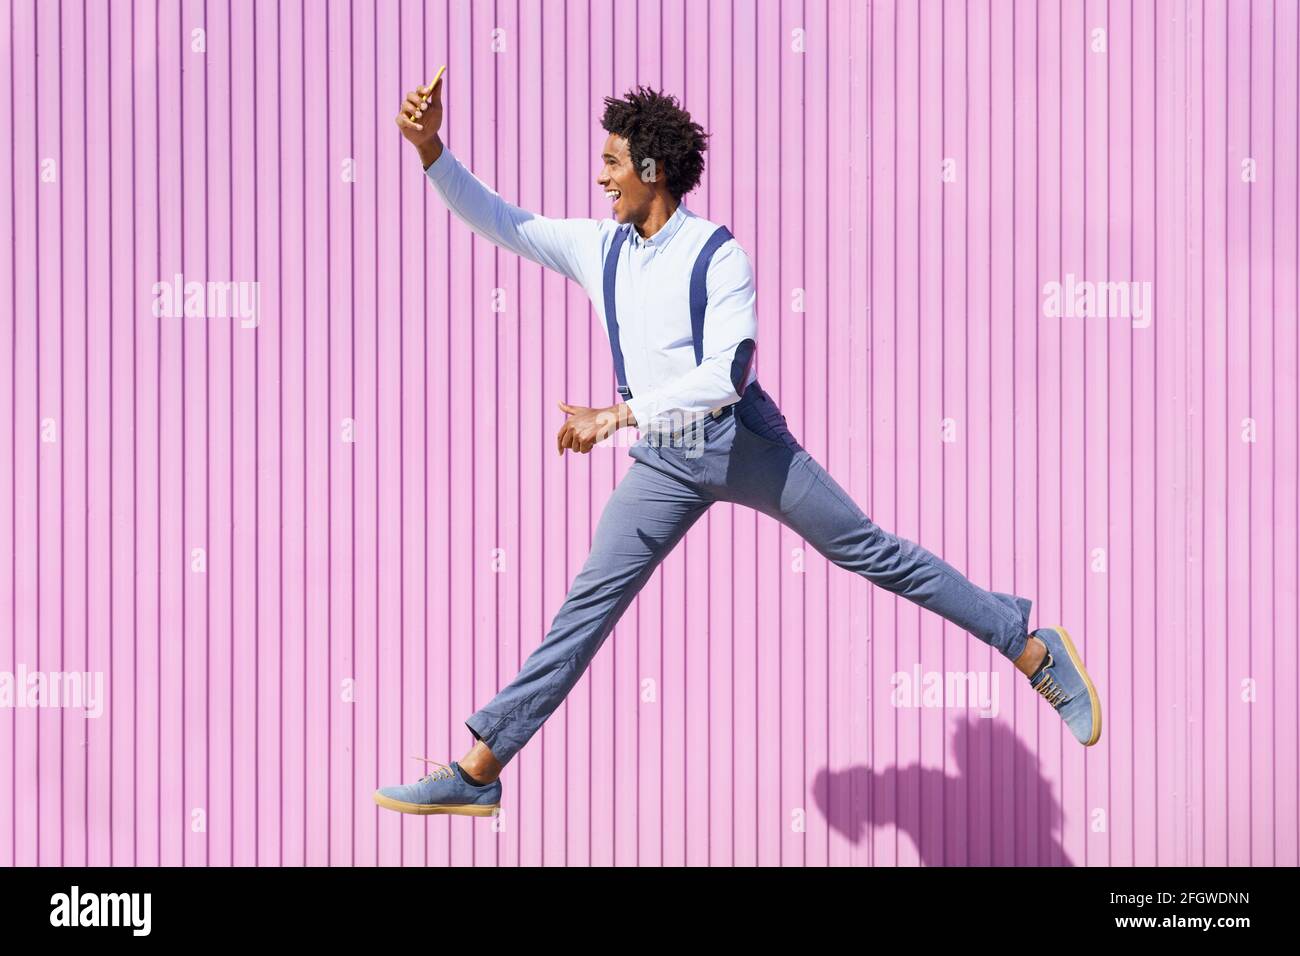 Uomo nero, con capelli afro, prendendo un selfie con il suo smartphone mentre saltando su uno sfondo di persiane rosa. Foto Stock